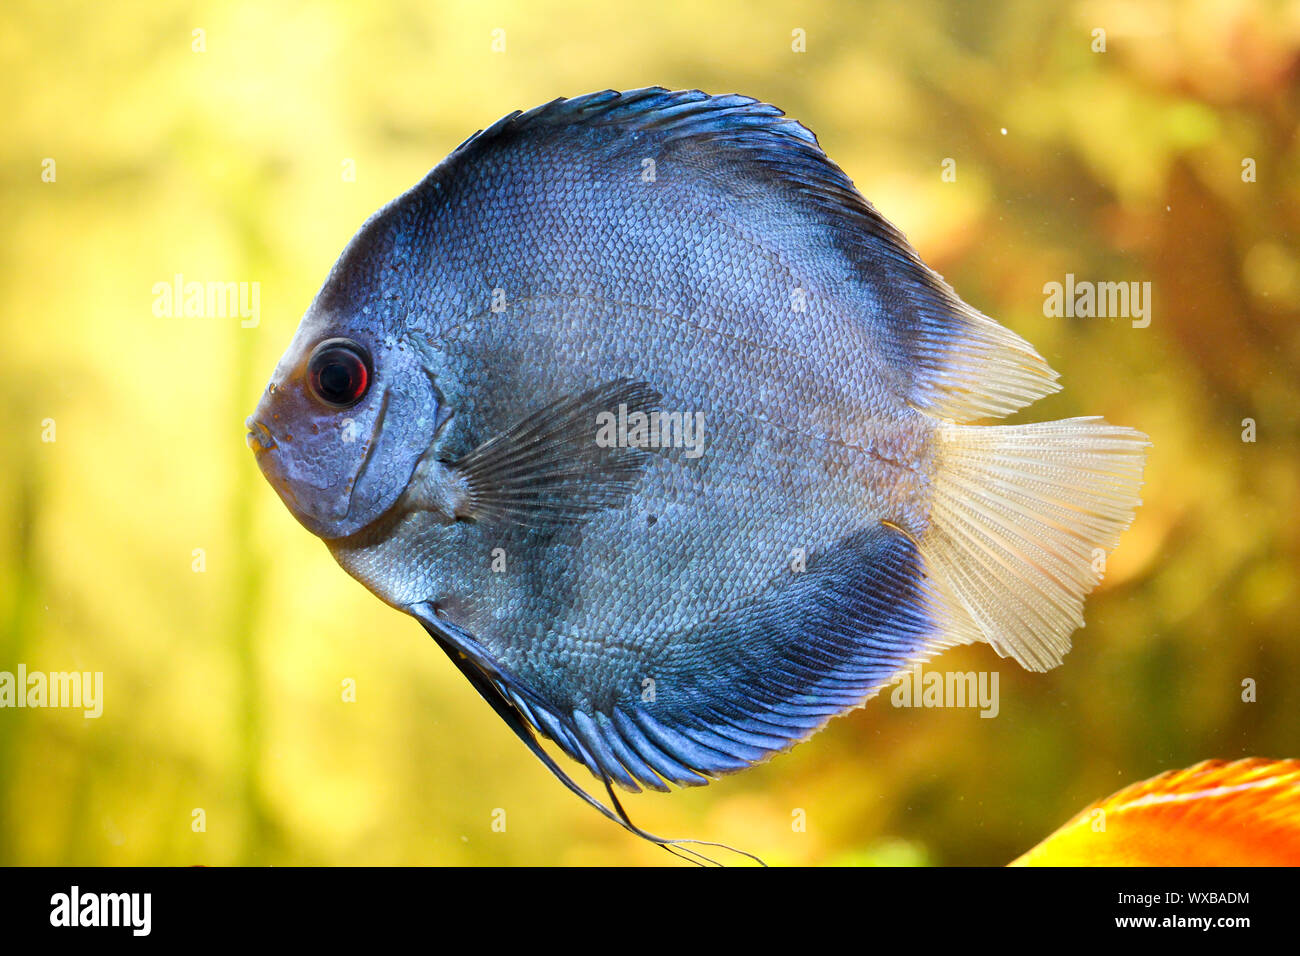 Colorful discus fish in the aquarium Stock Photo